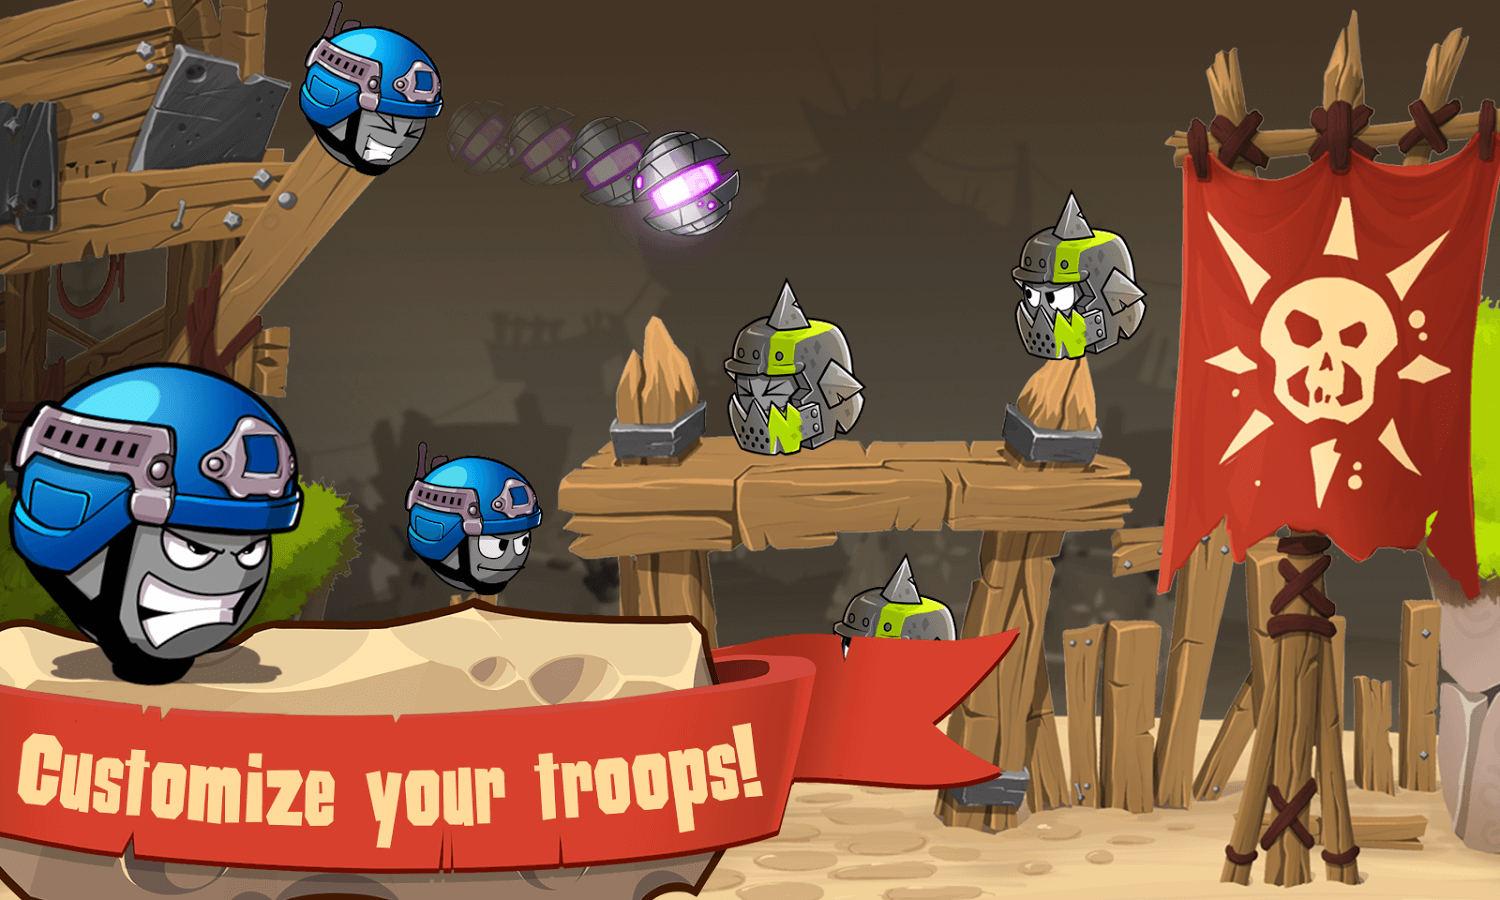 Warlings Defense – Complete game